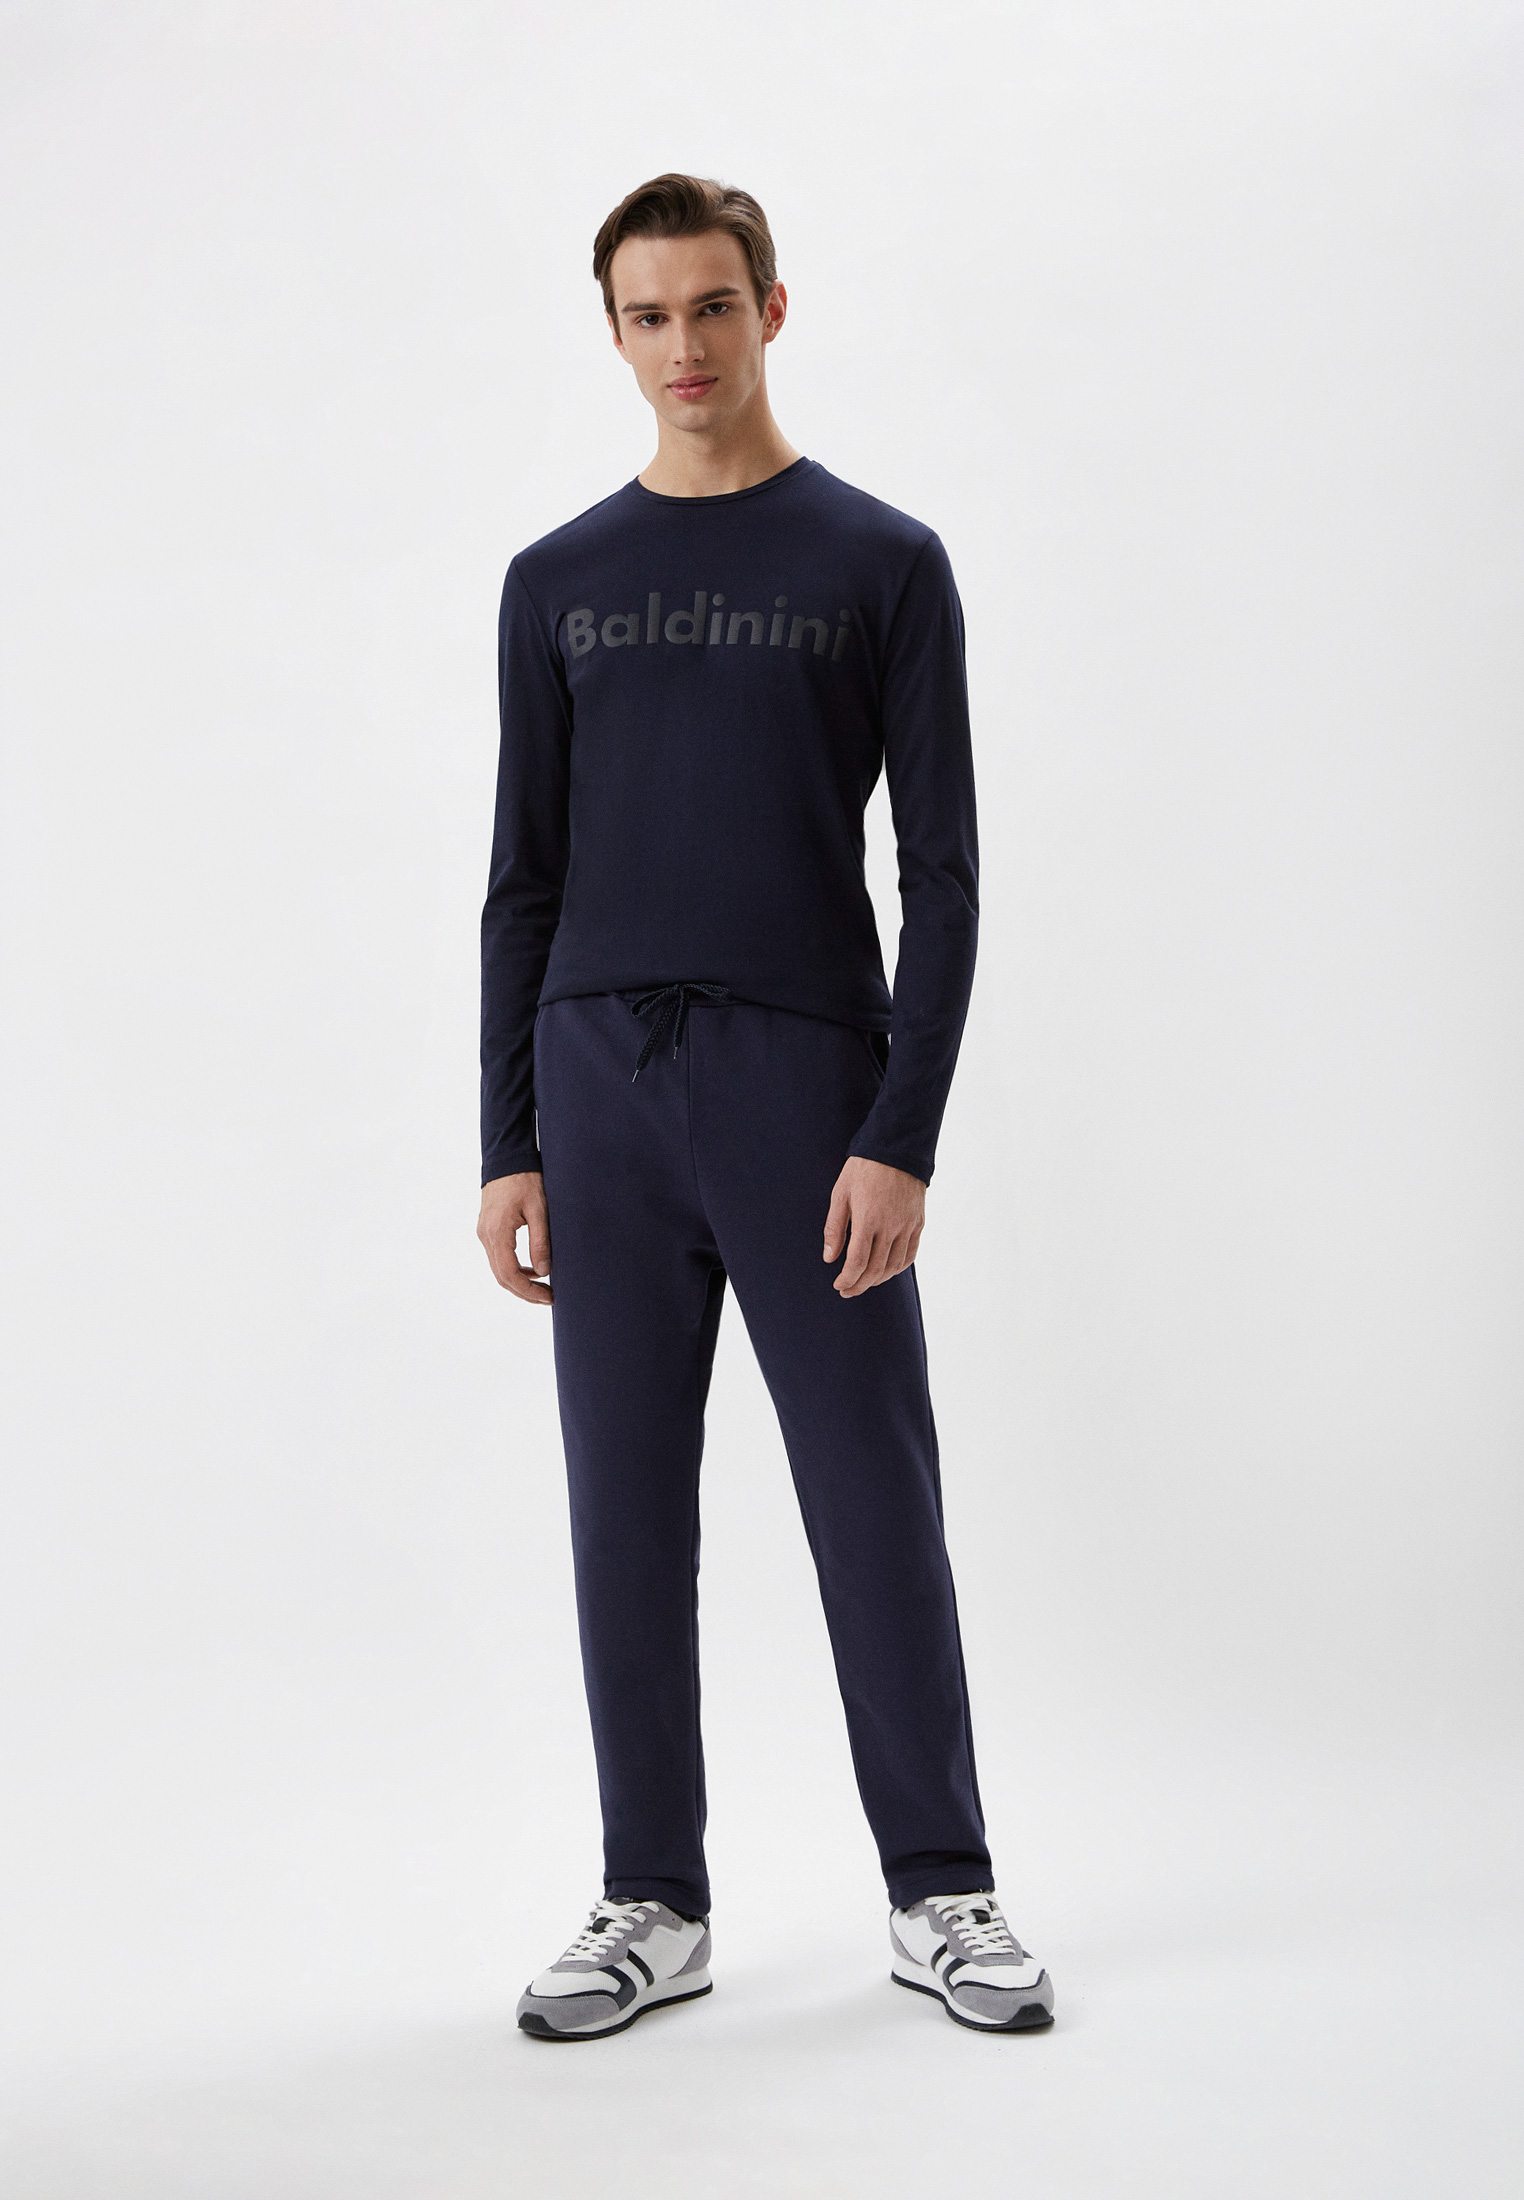 Мужские спортивные брюки Baldinini (Балдинини) M14: изображение 2